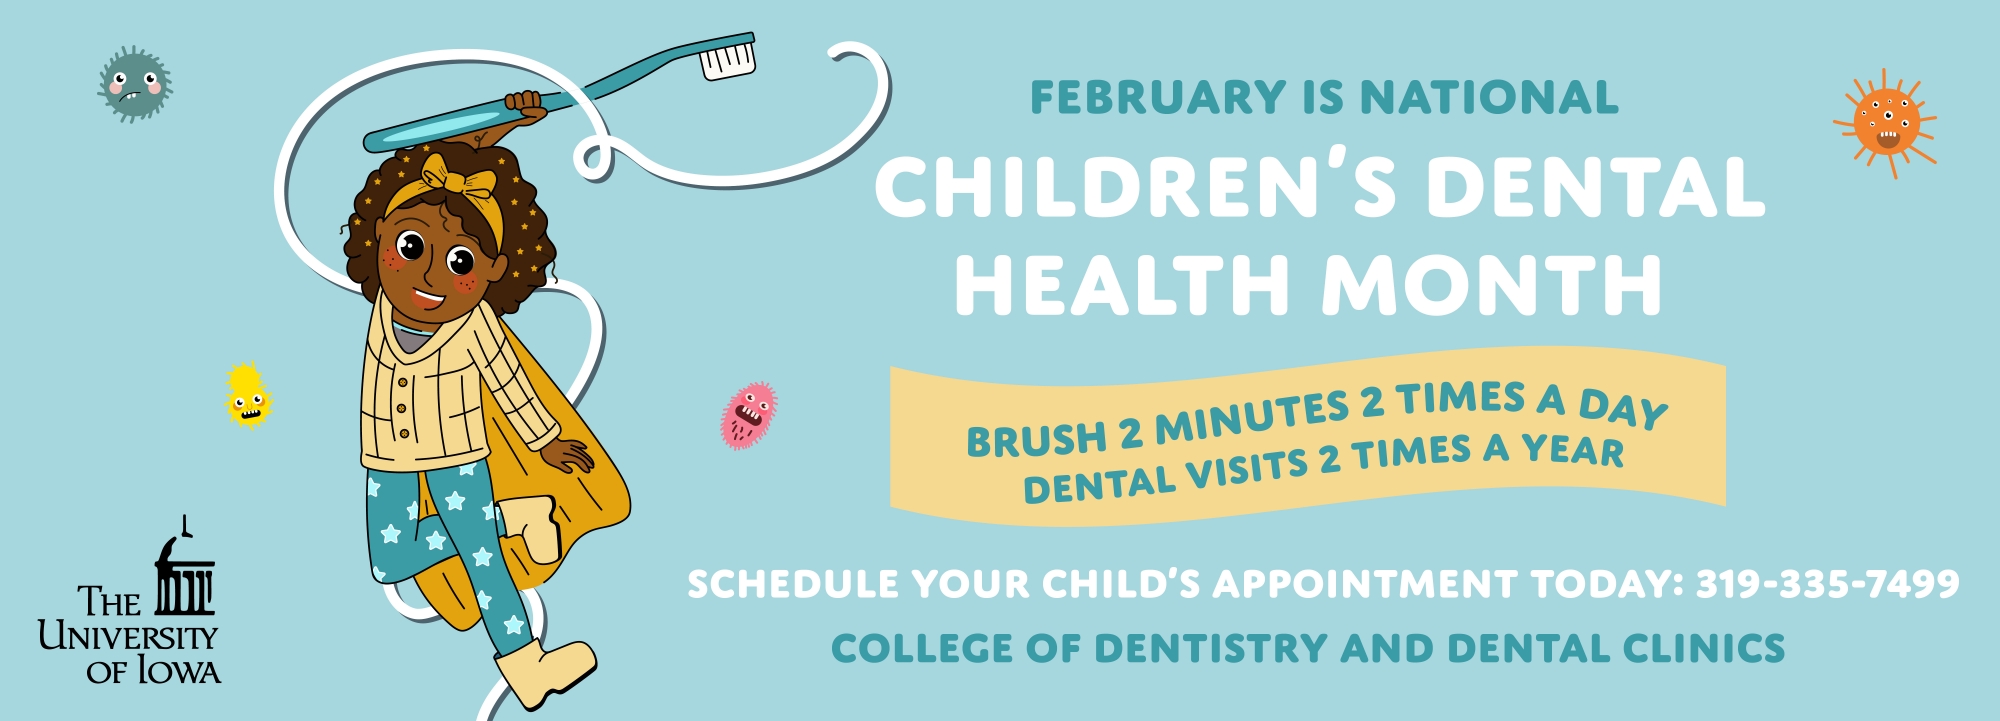 Children's dental health month